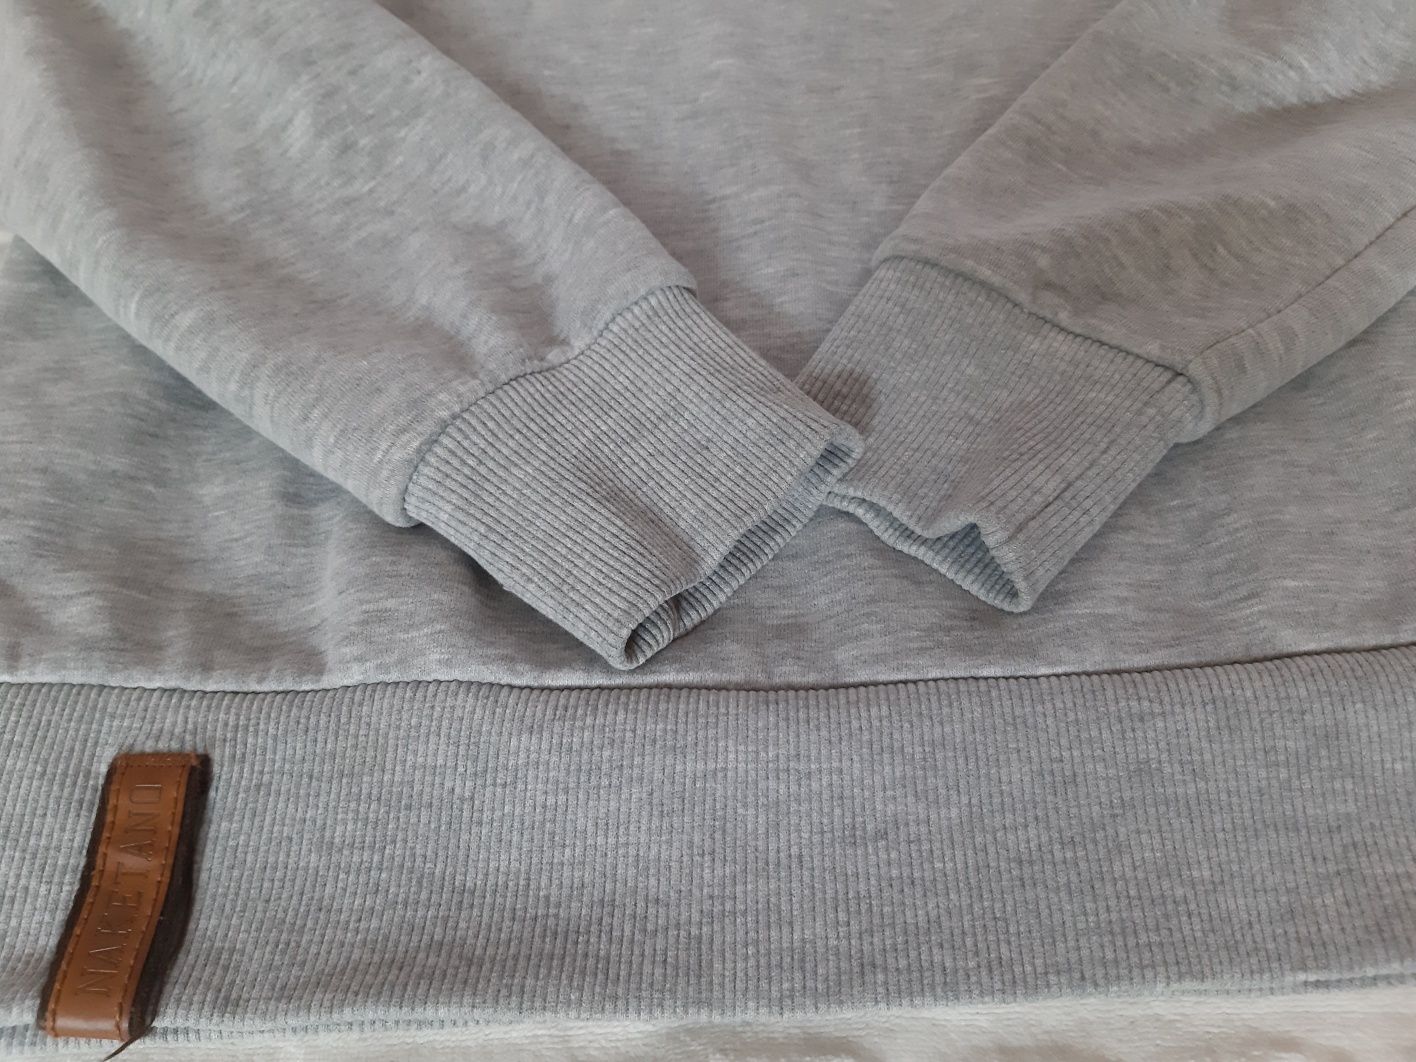 Bluza Naketano S 36 38 bawełna puszysta miękka szara kaptur